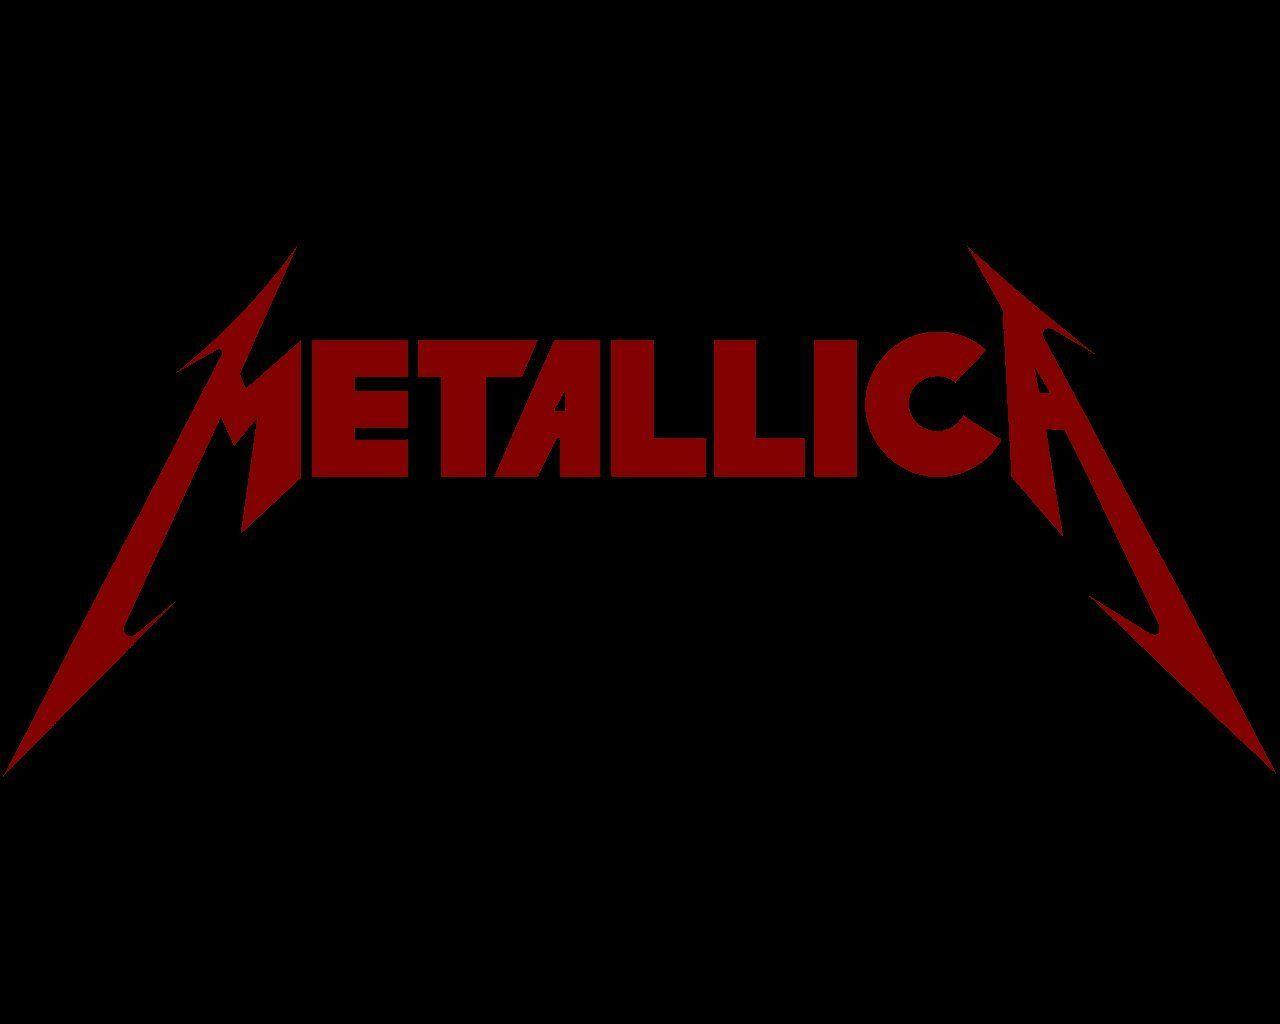 Red Metallica Logo - Amazon.com: spdecals Metallica Heavy Metal Car Window Vinyl Decal ...